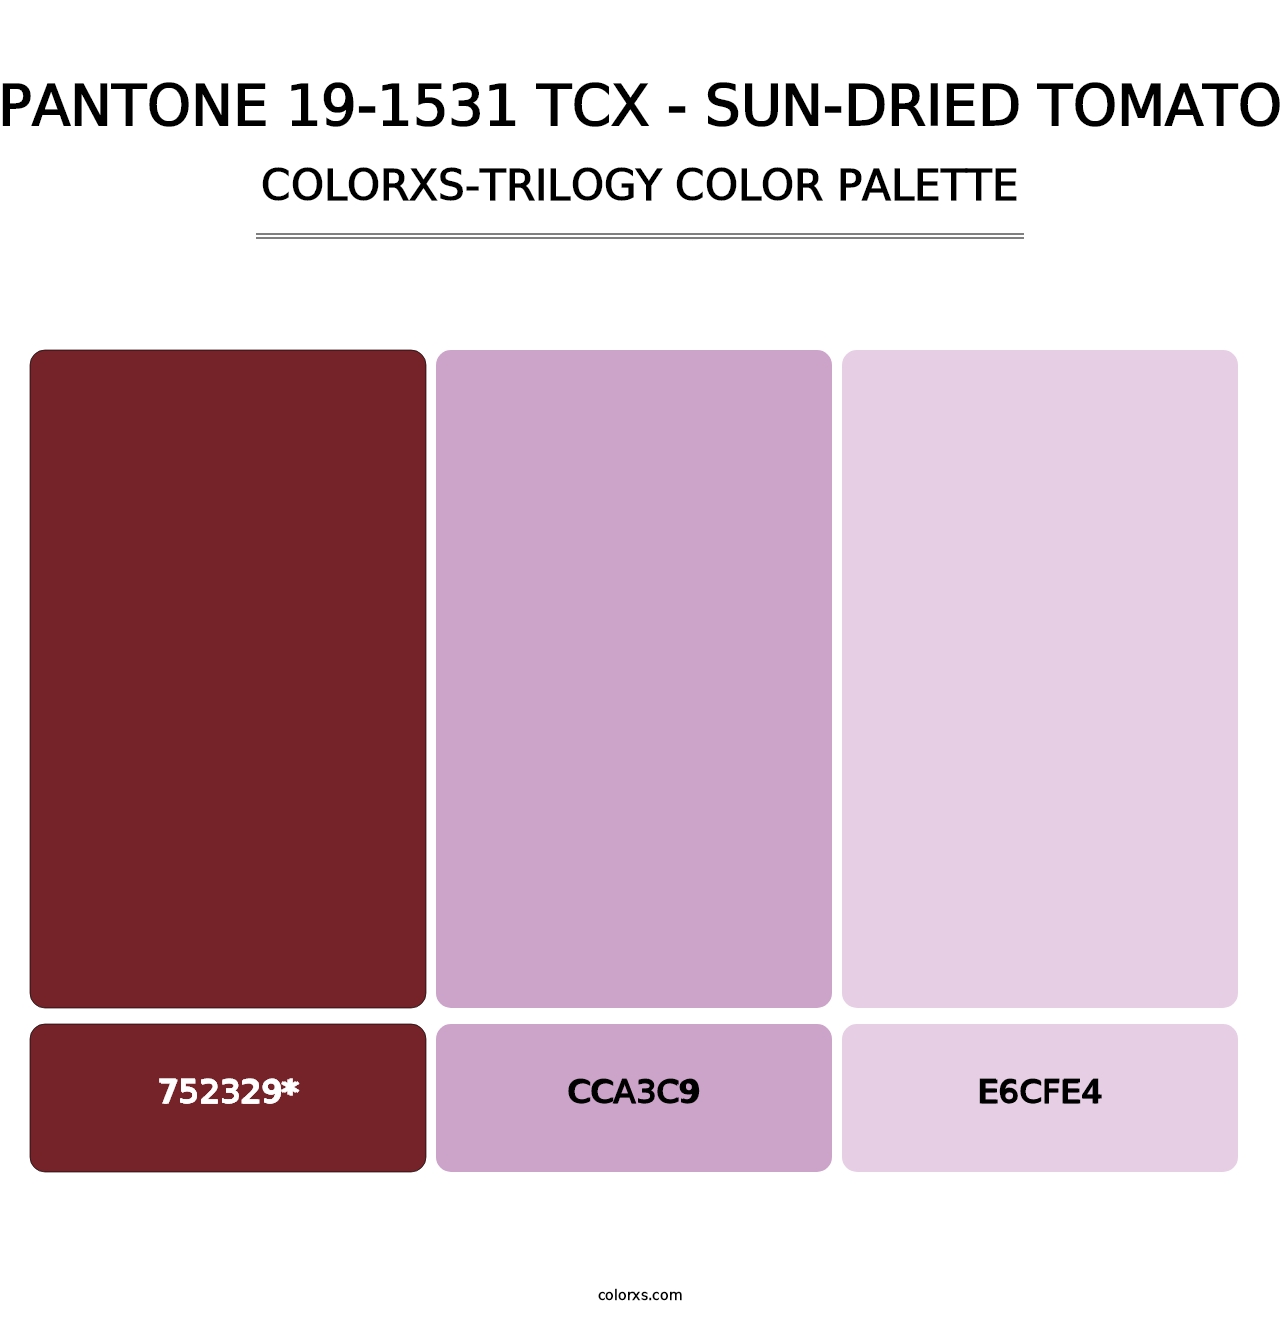 PANTONE 19-1531 TCX - Sun-Dried Tomato - Colorxs Trilogy Palette